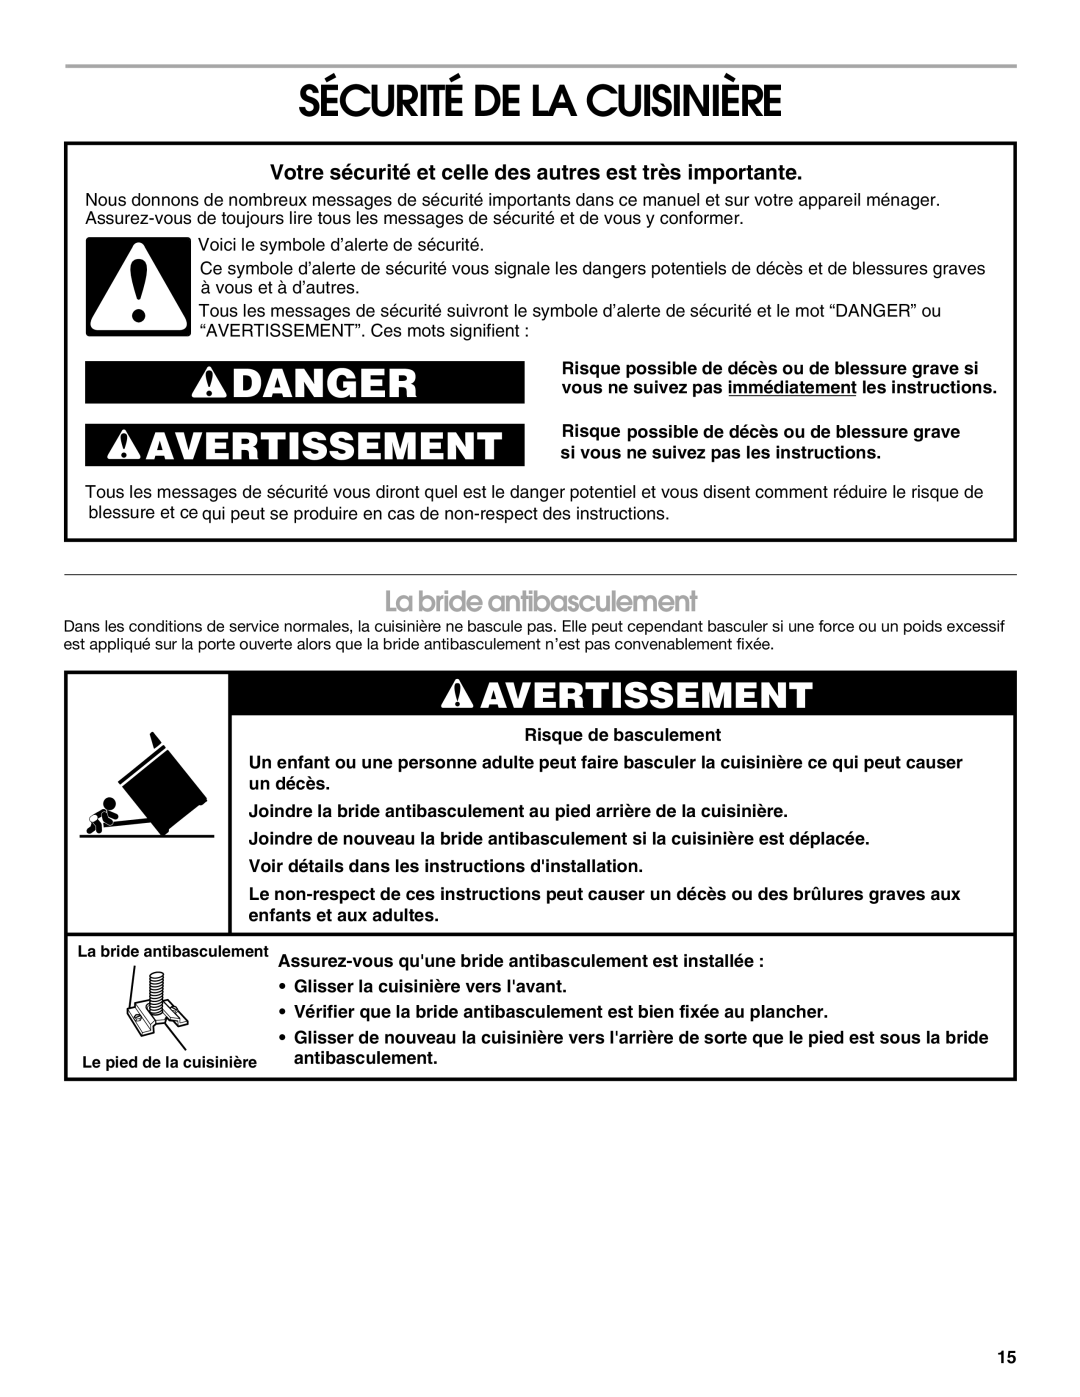 Whirlpool RME30000 manual Sécurité De La Cuisinière, Avertissement, La bride antibasculement, Danger 